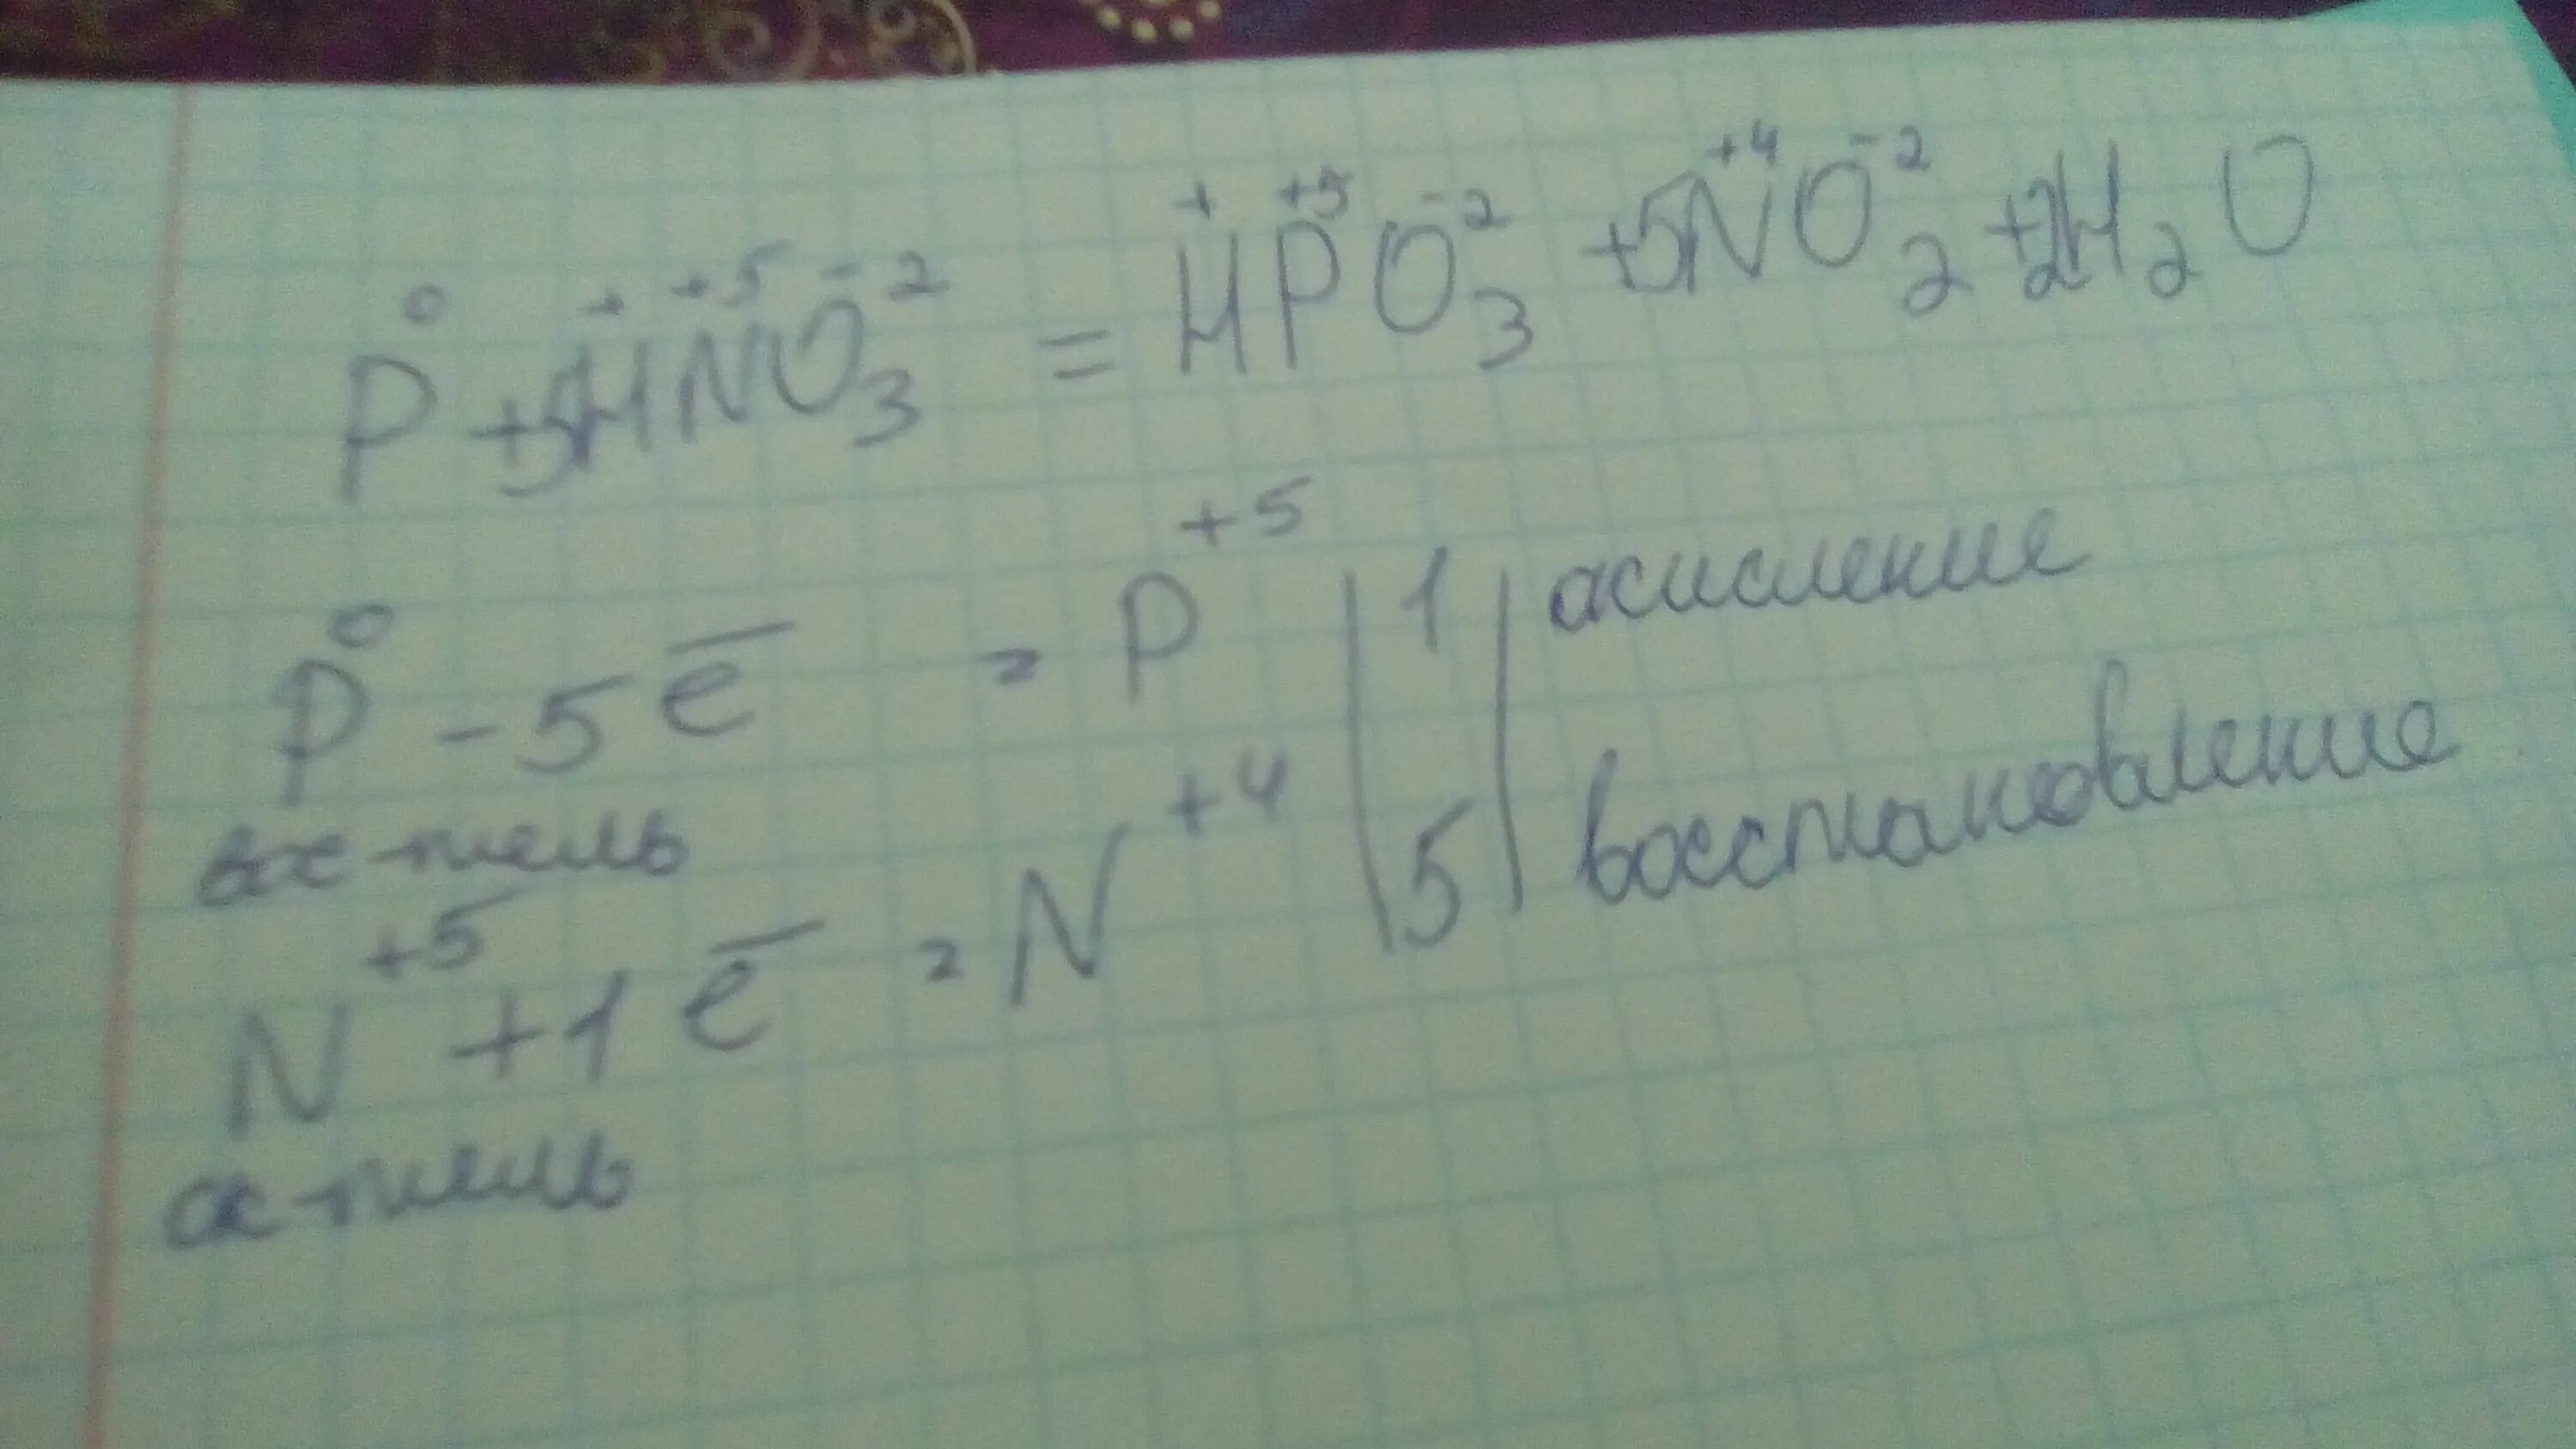 Hno3 p h2o окислительно восстановительная реакция. Метод электронного баланса p+hno3+h2o. P+hno3+h2o окислительно восстановительная реакция. Баланс p+hno3 h3po4+no2+h2o. P hno3 h2o электронный баланс.